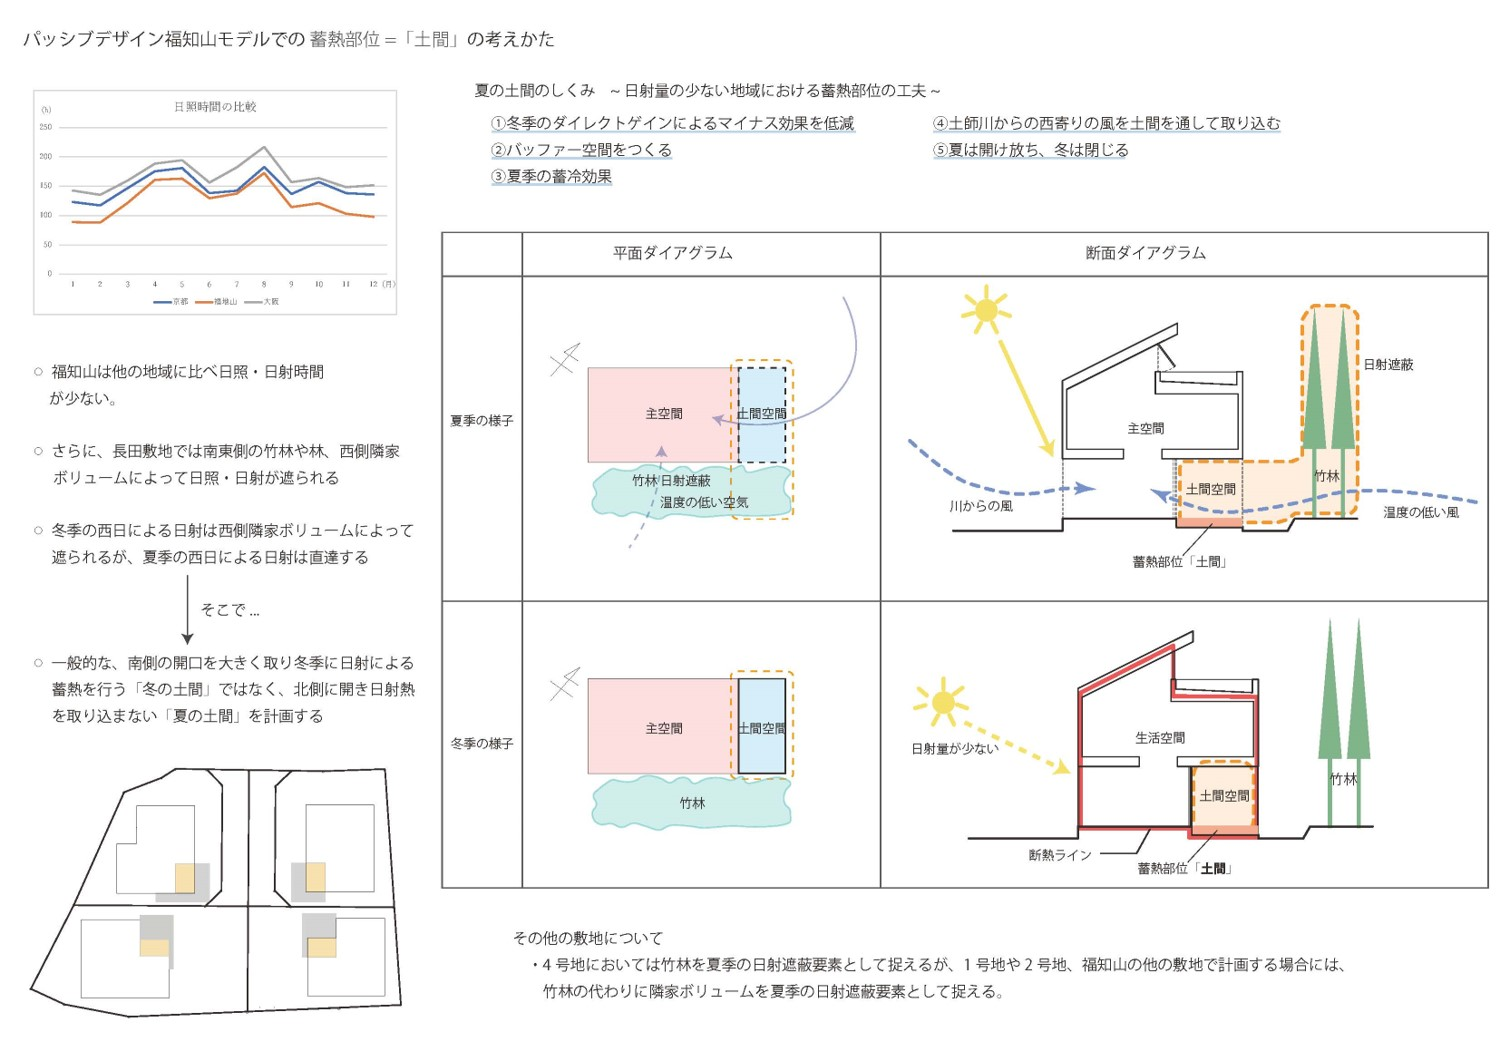 パッシブデザイン福知山モデル 体系化へ アイチャッチ